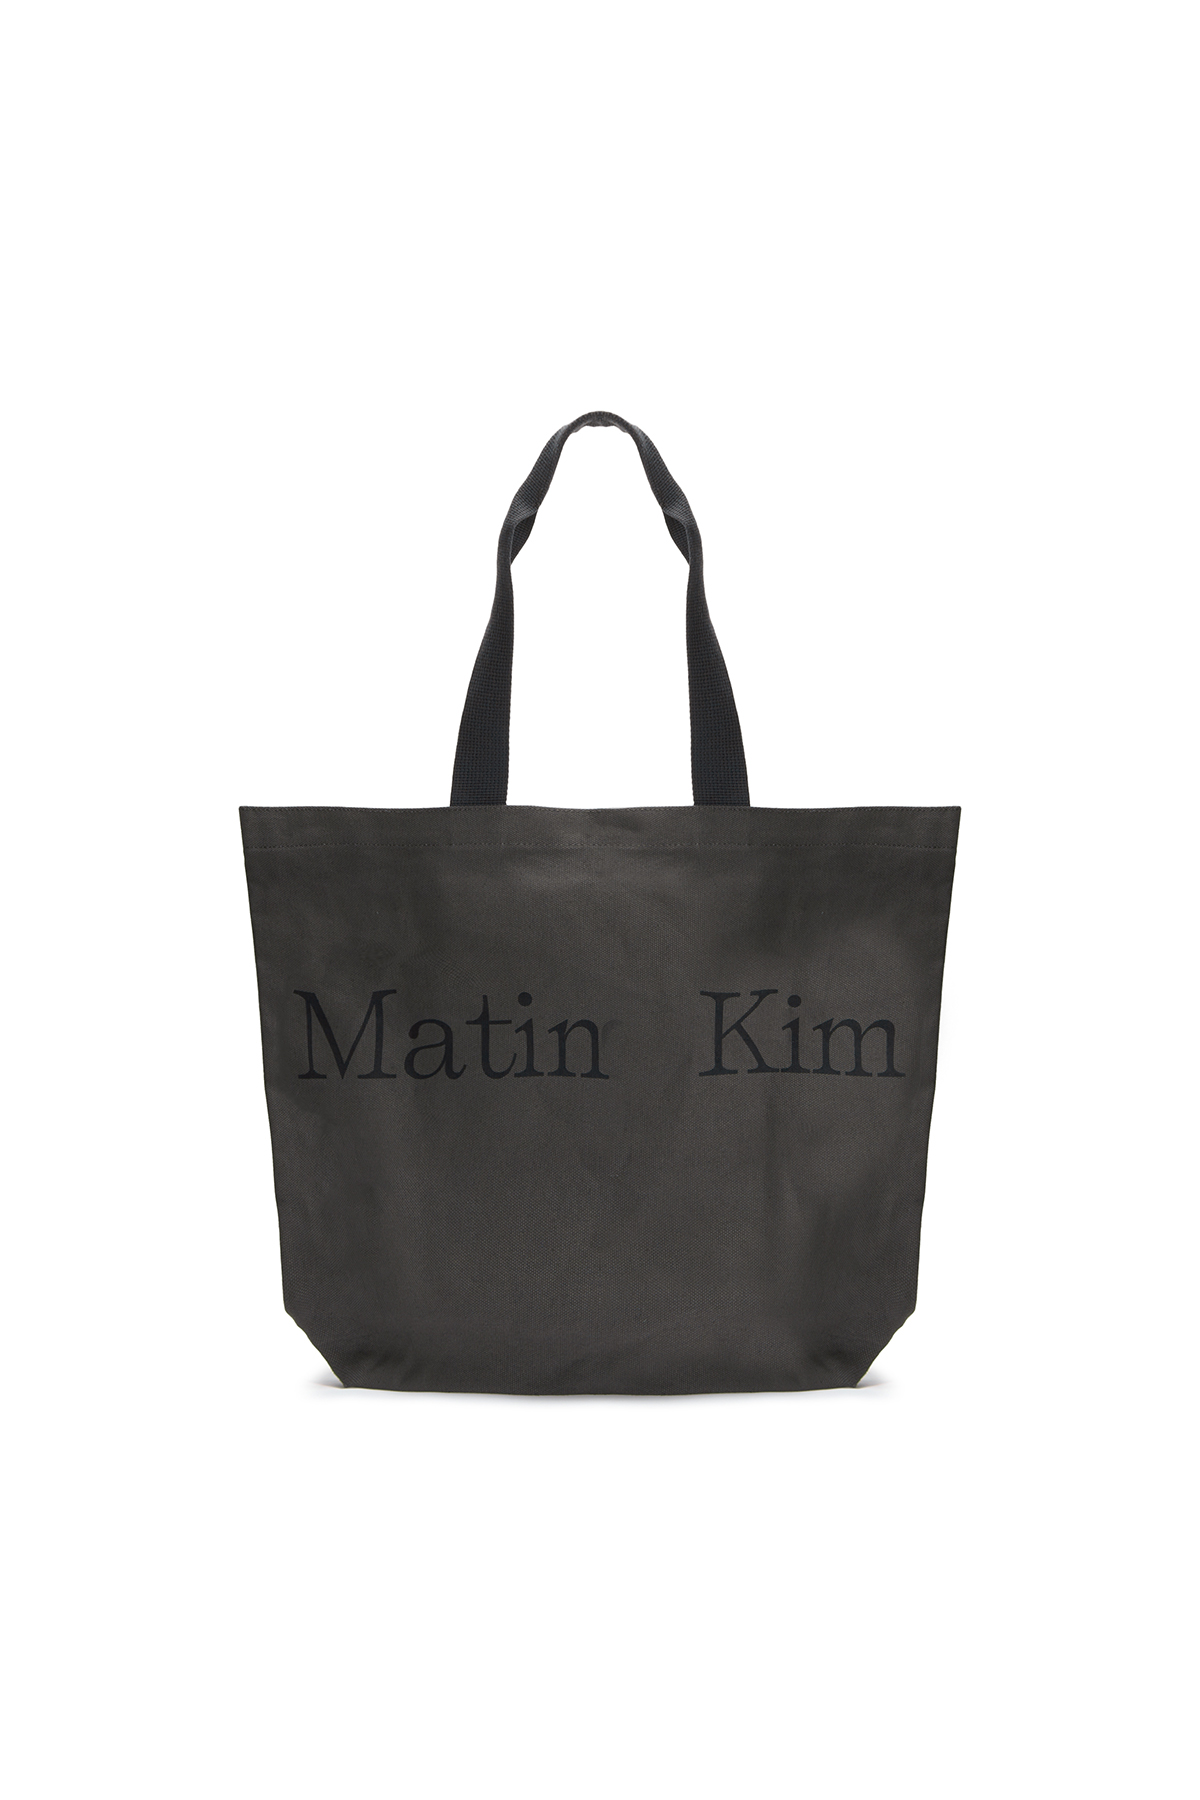 注目ショップ Matin Kim silver mini bag その他 - funicular.mx